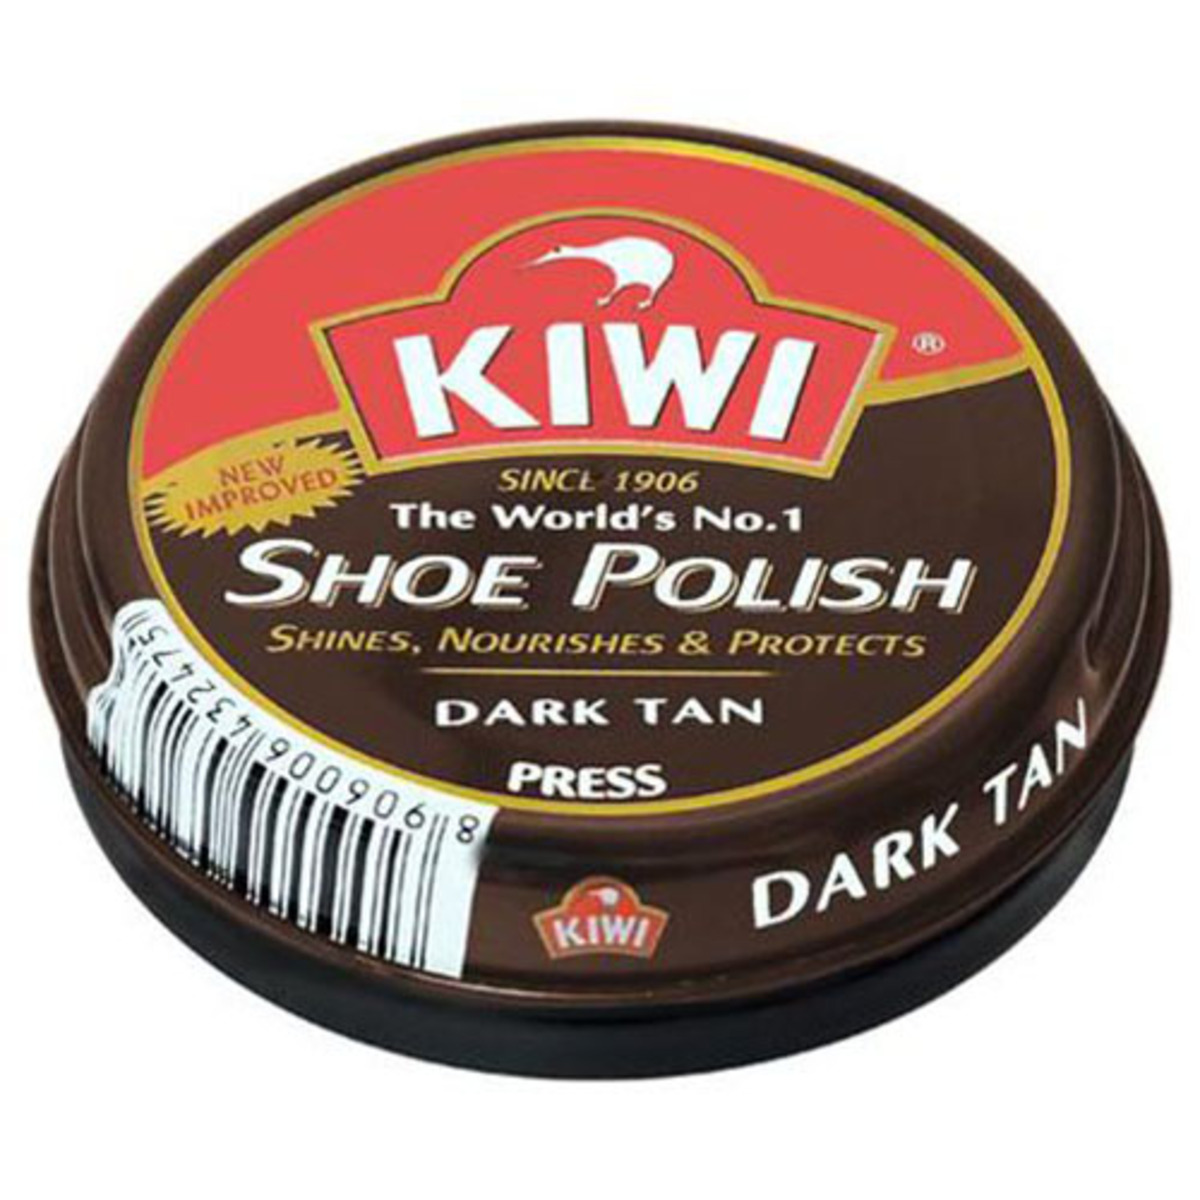 Kiwi Shoe Polish Dark Tan 40g